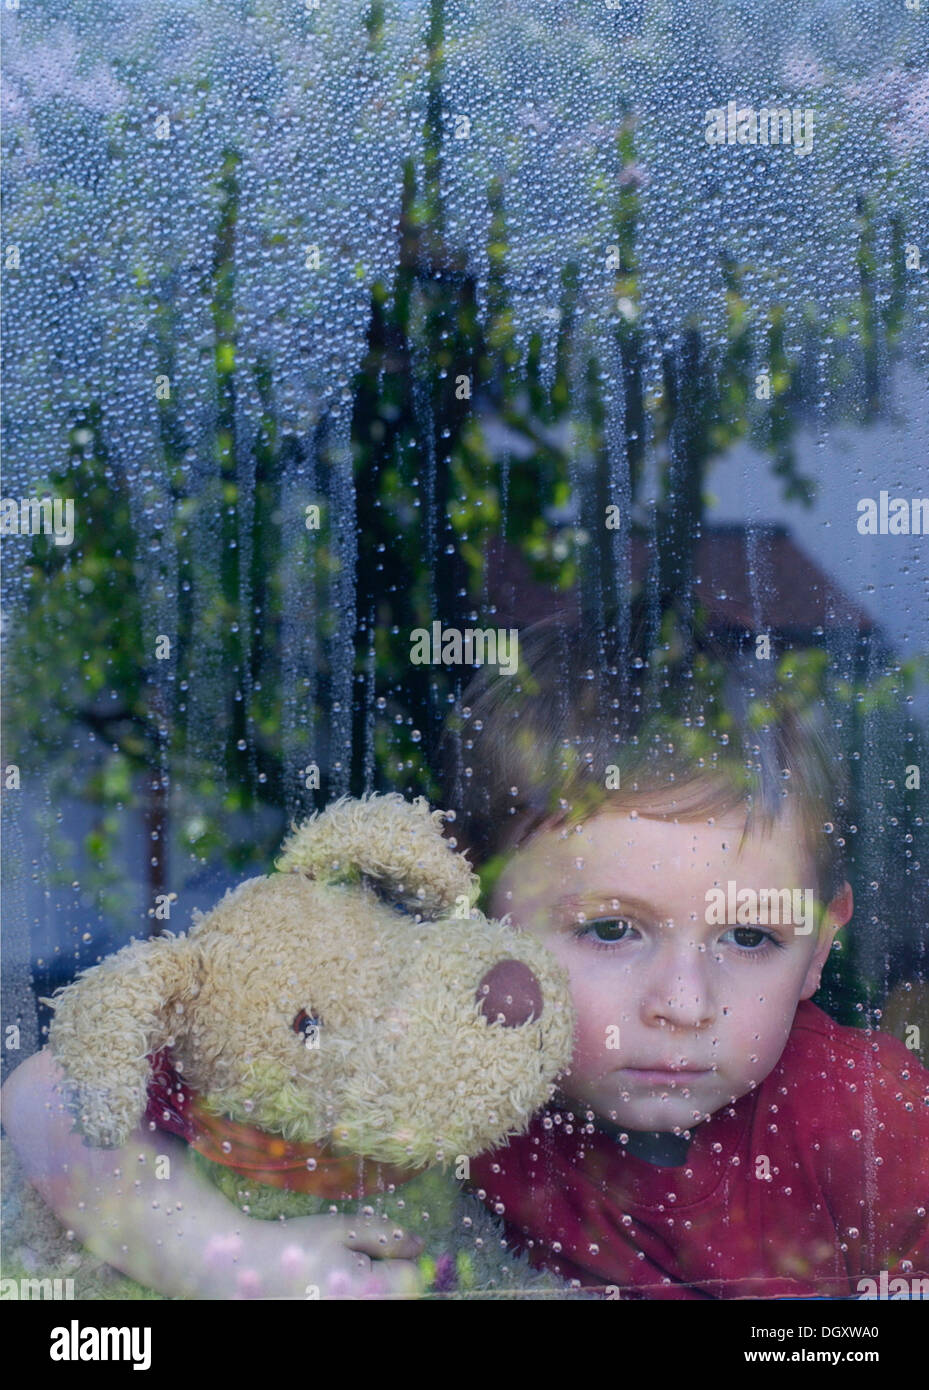 Garçon à la tristement par la fenêtre avec l'eau, tenant un animal en peluche dans ses bras Banque D'Images